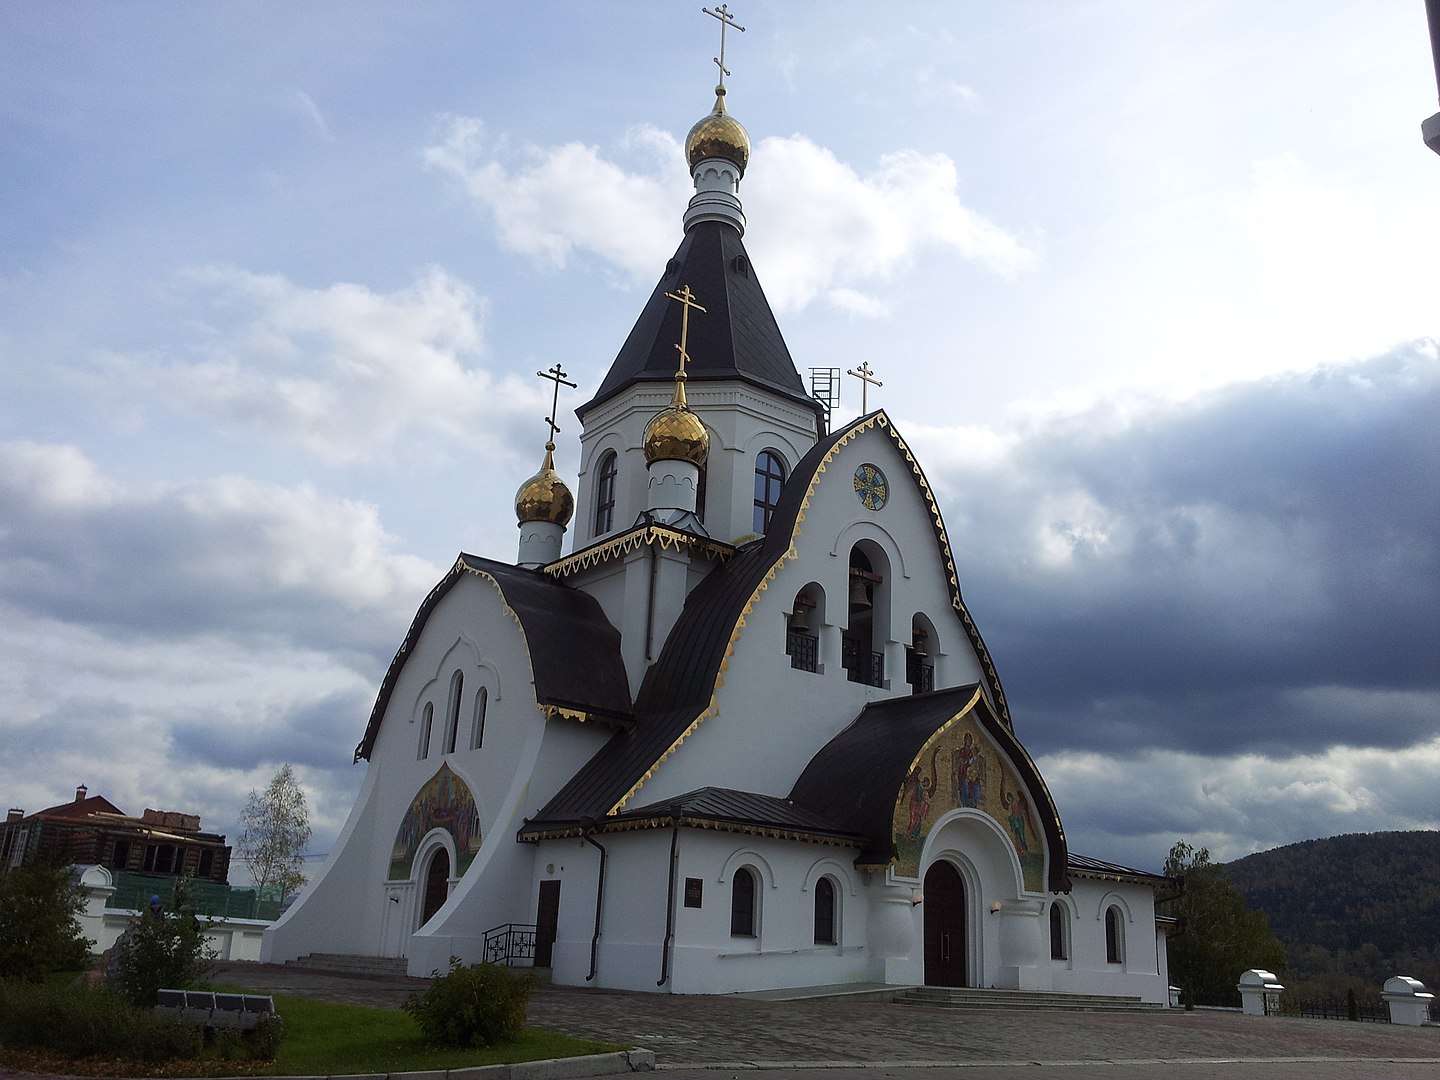 Известный православный монастырь россии презентация